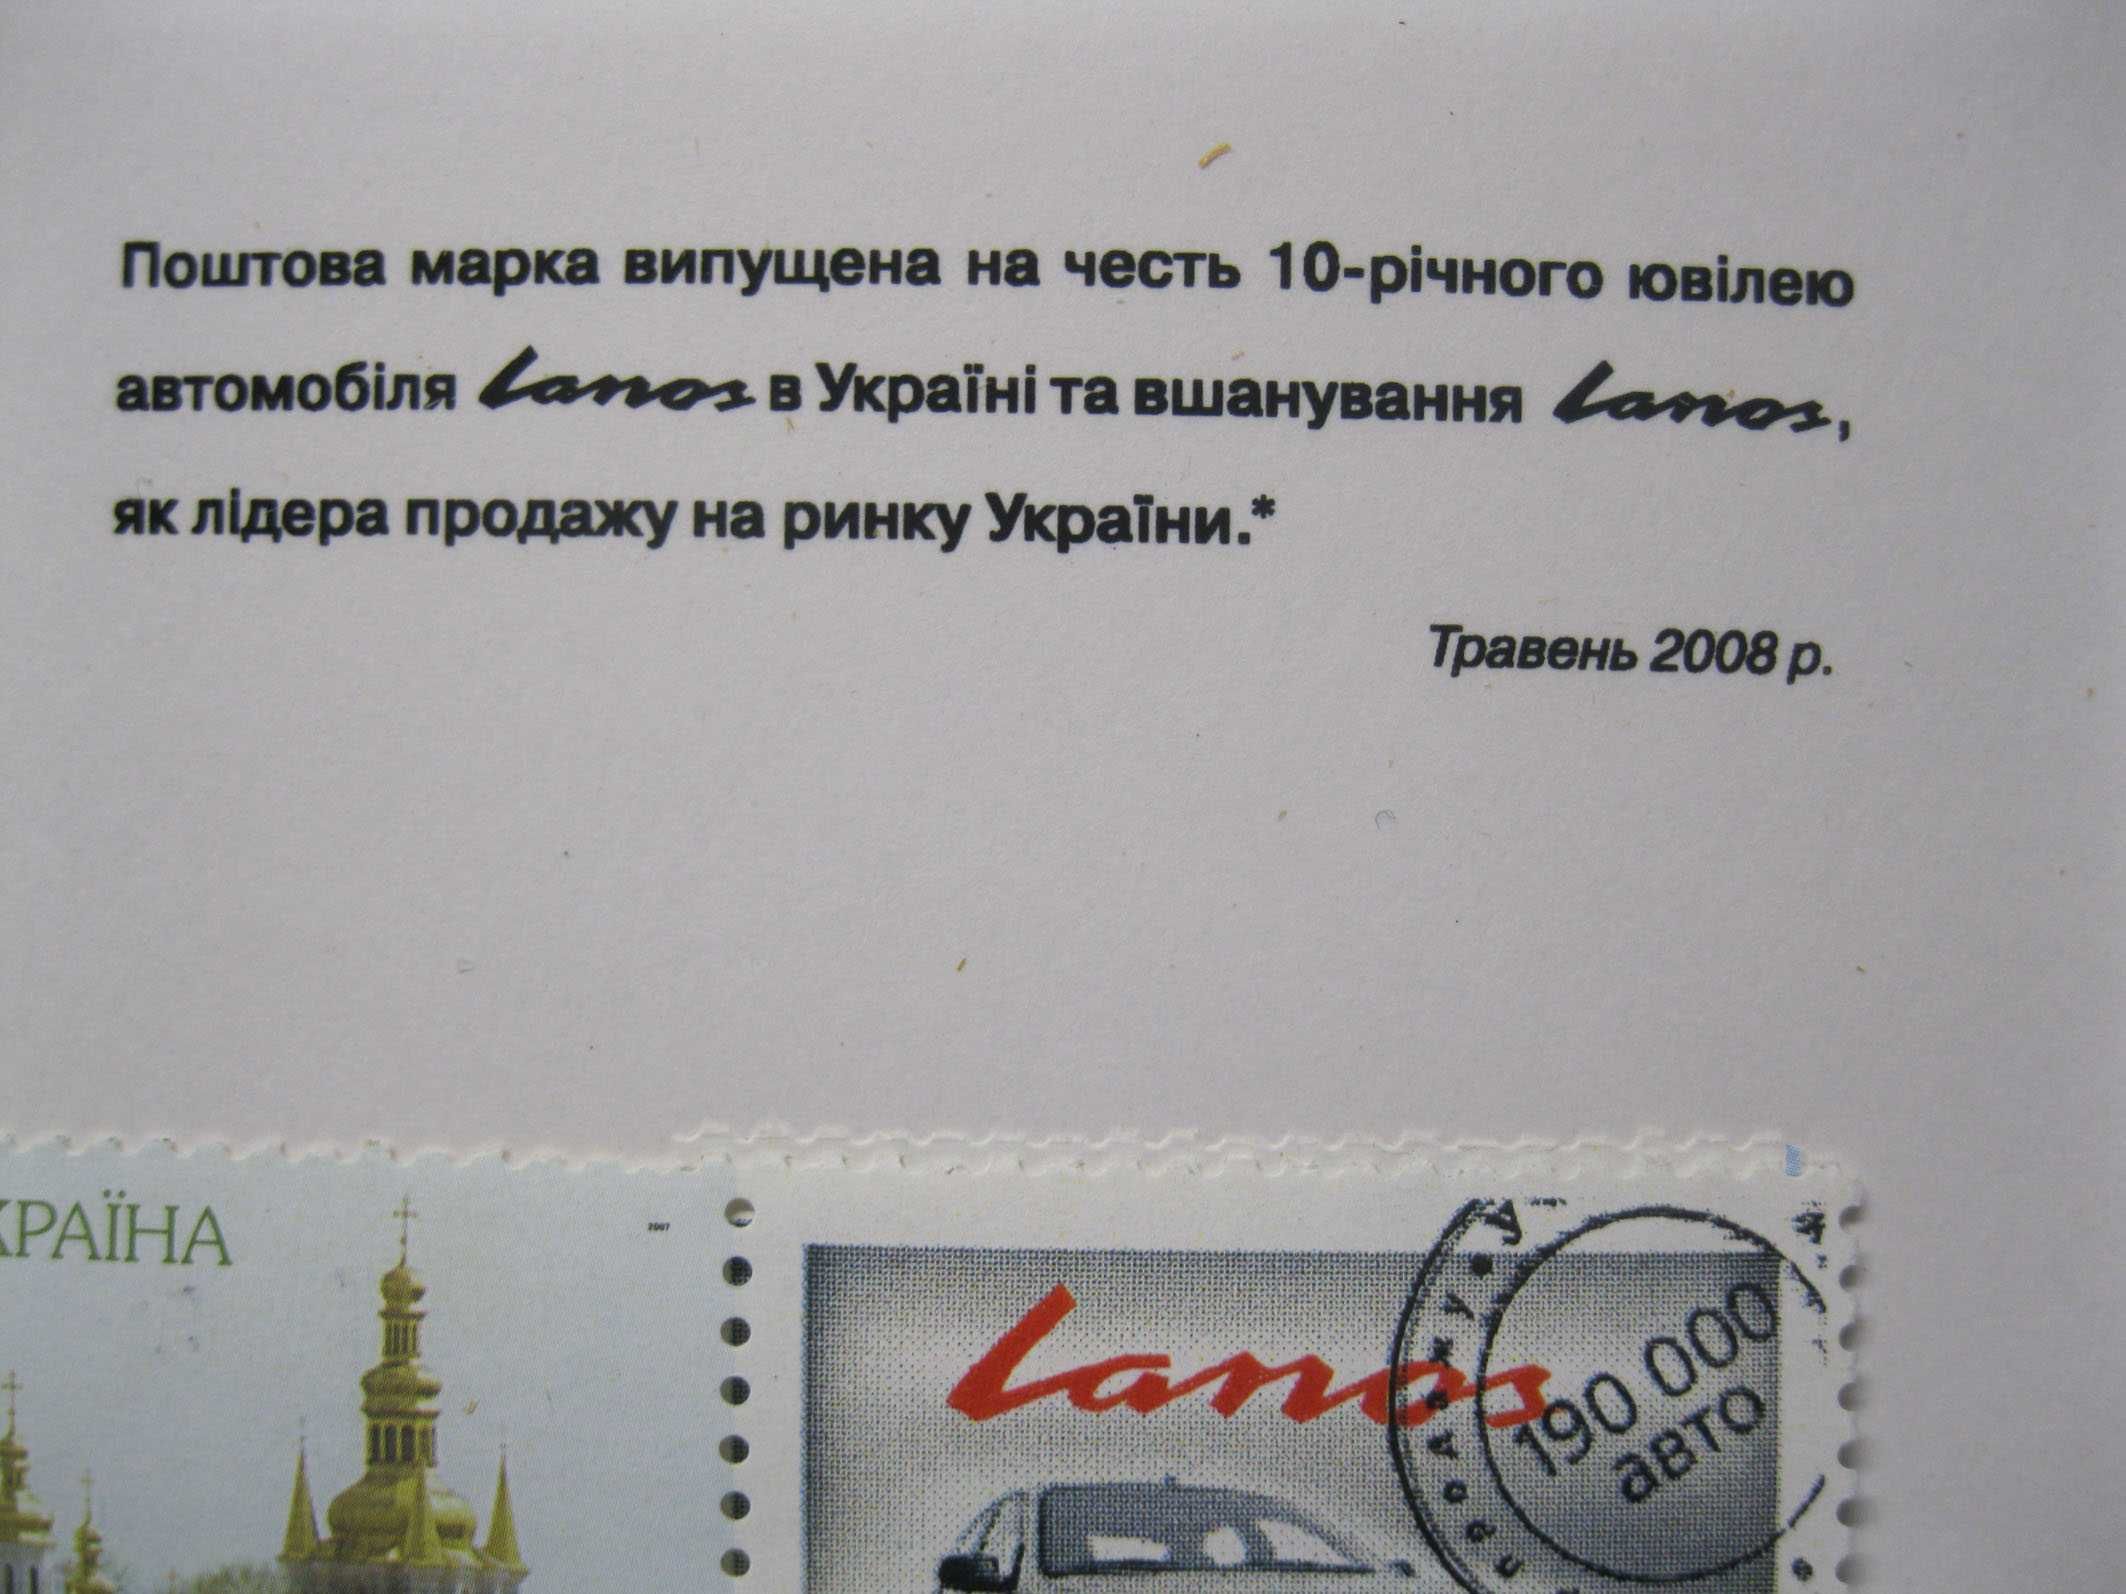 Юбилейная почтовая марка  Ланос  lanos в честь  10-летнего юбилея